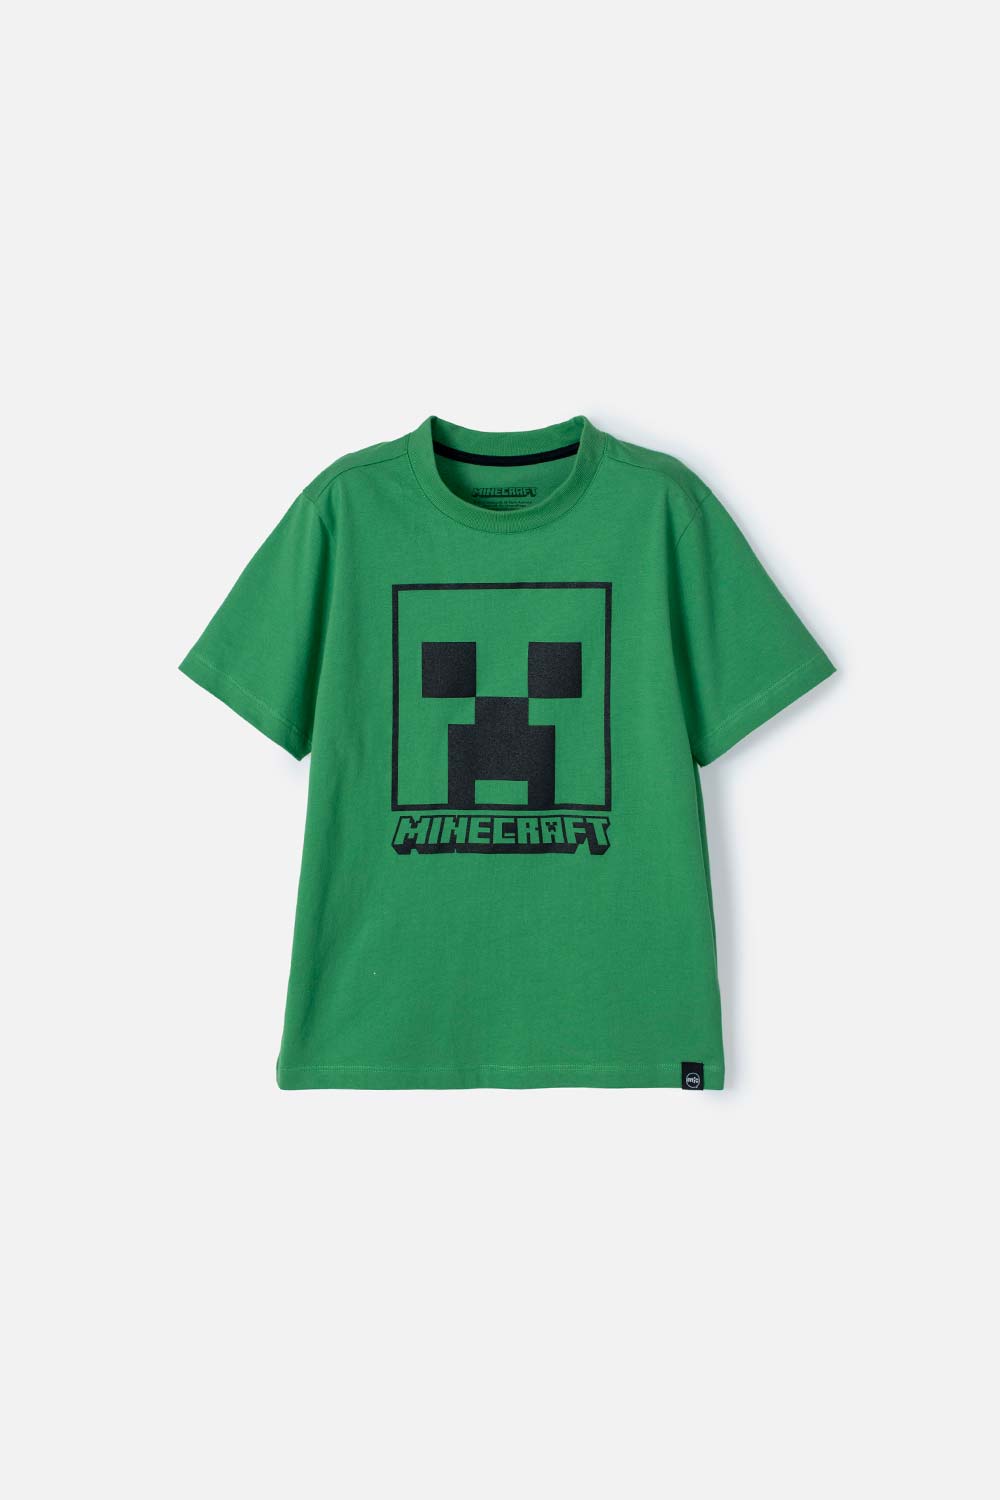 Camiseta de Minecraft verde manga corta para niño - Ponemos la Fantasía!